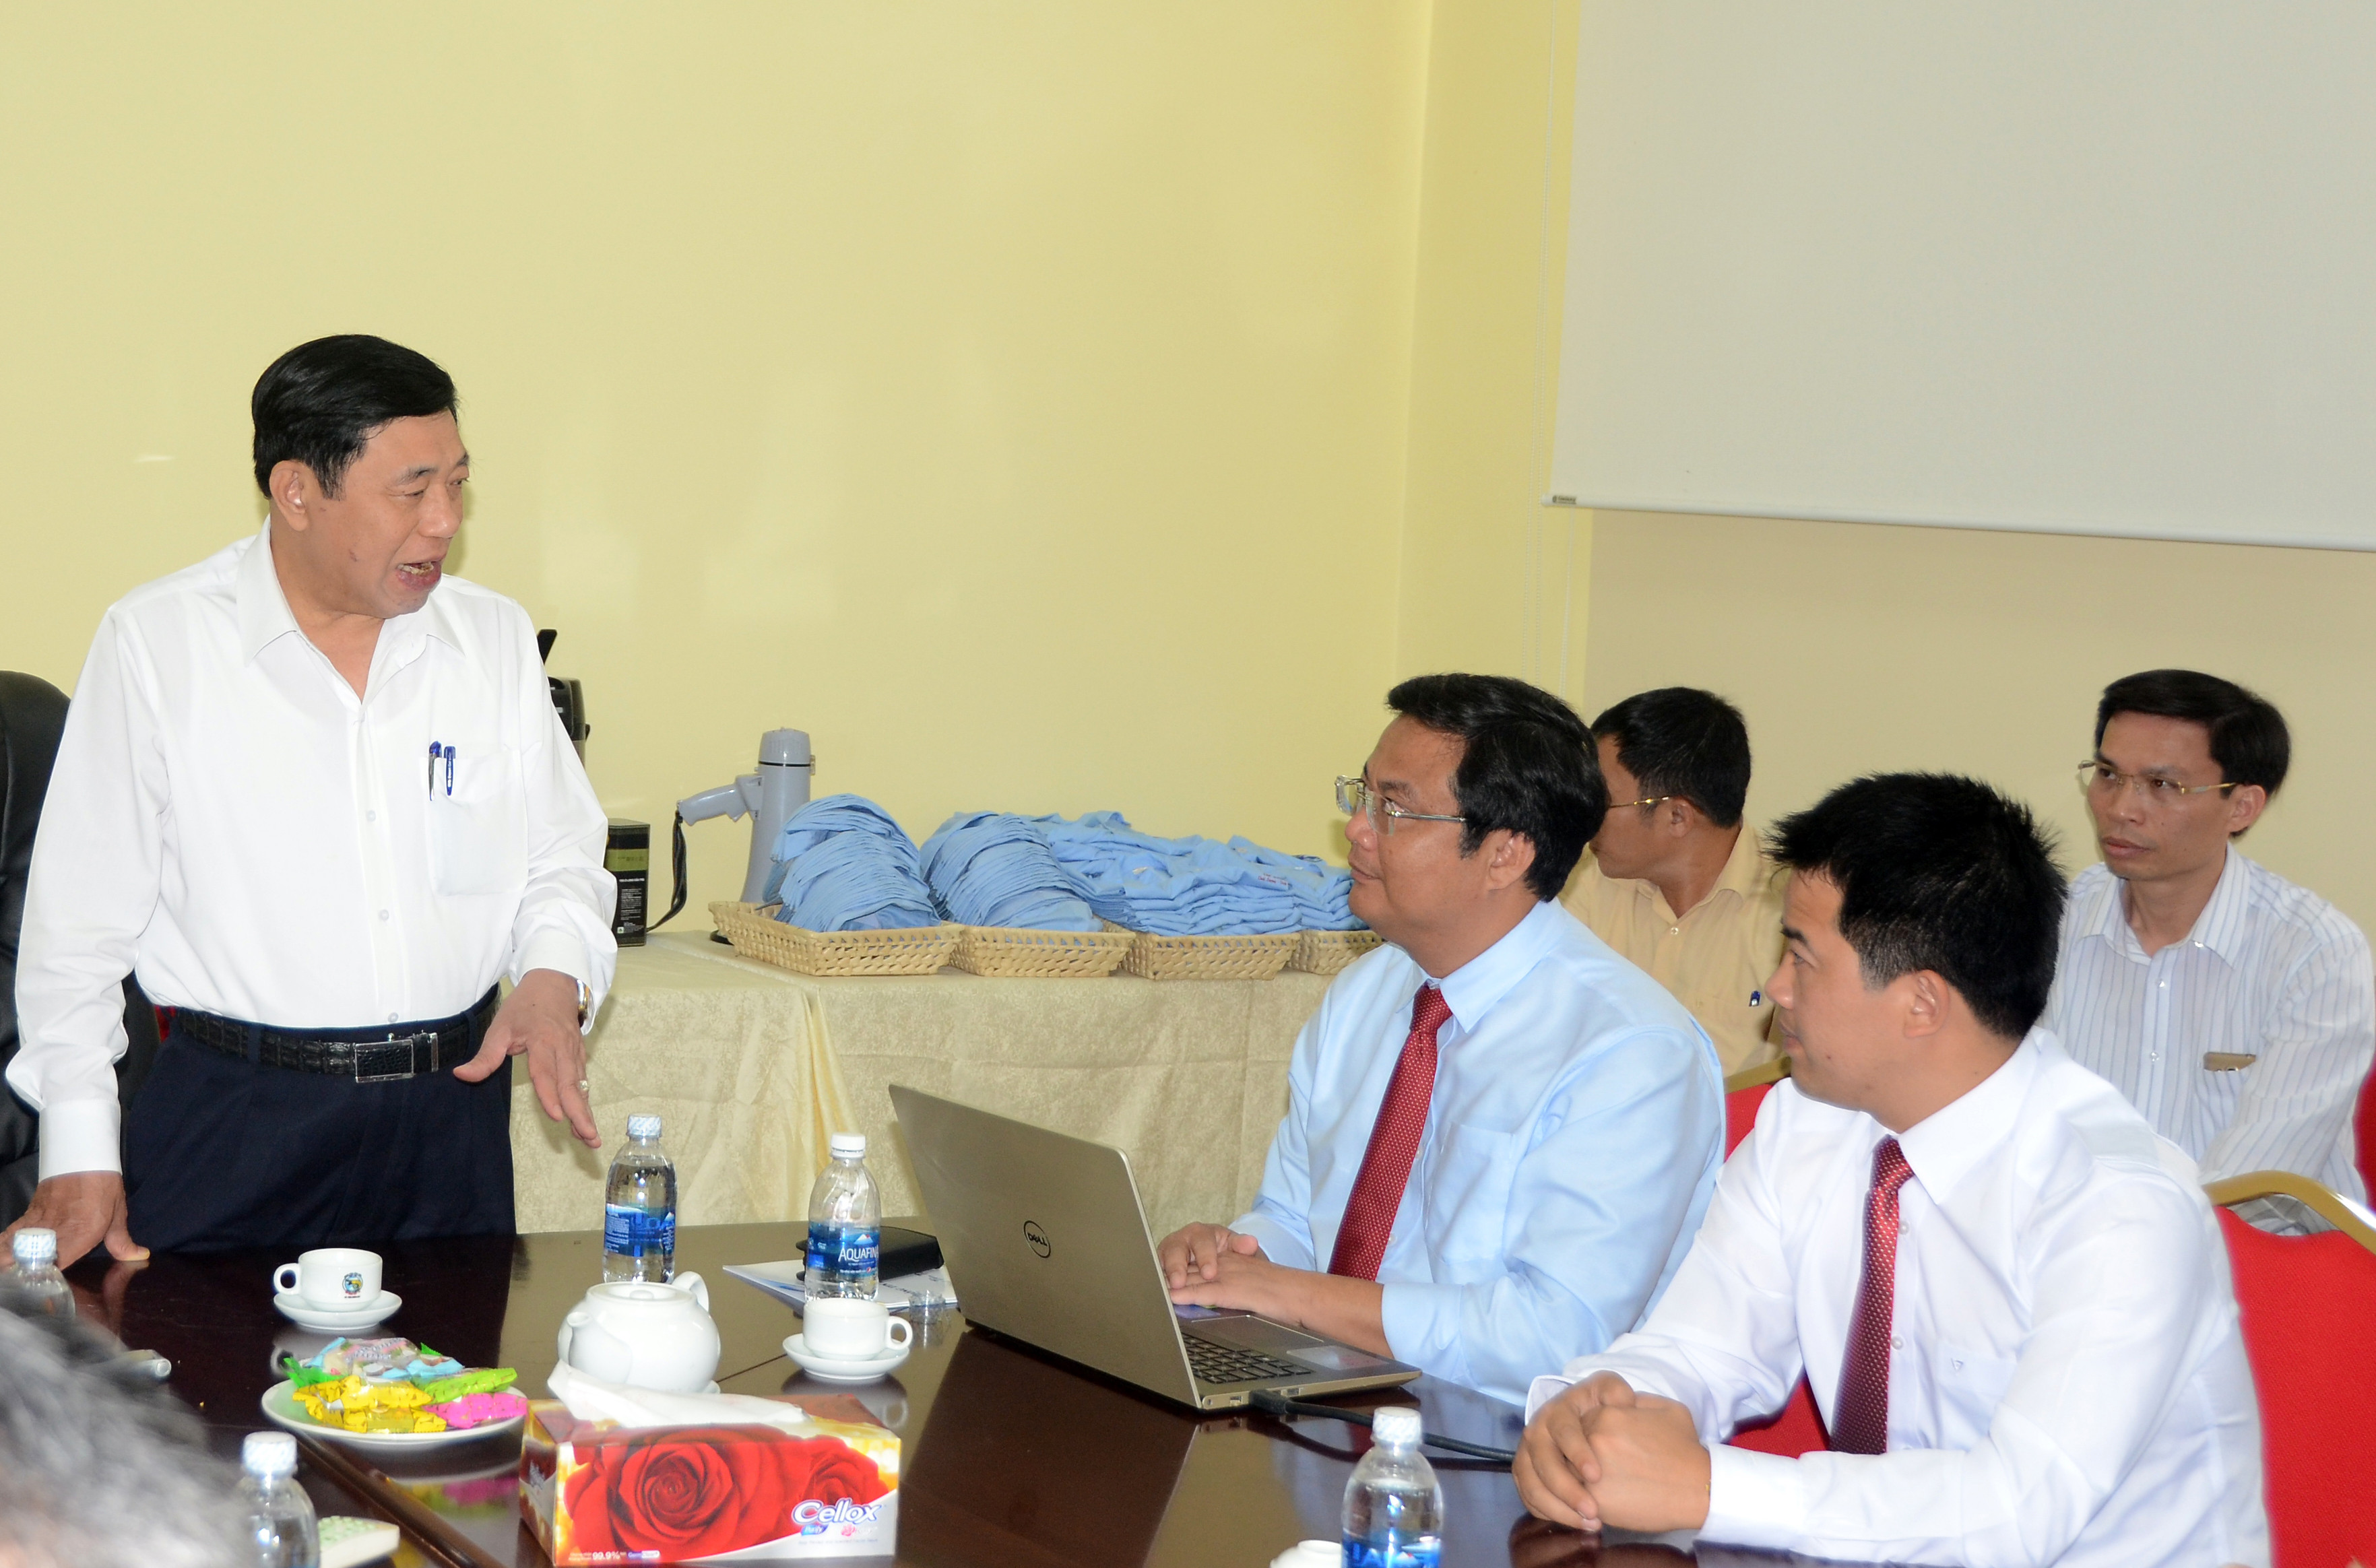 Chủ tịch UBND tỉnh đã biểu dương những sự cố gắng của chính quyền UBND huyện Quỳnh Lưu trong việc kêu gọi, tạo điều kiện cho các nhà đầu tư, đầu tư các công nghệ sản xuất cao, tạo nhiều công ăn việc làm, nâng cao giá trị các sản phẩm thủy, hải sản, nông nghiệp… ở địa phương, giúp kinh tế địa phương ngày càng phát triển, đời sống người dân ngày càng được nâng cao